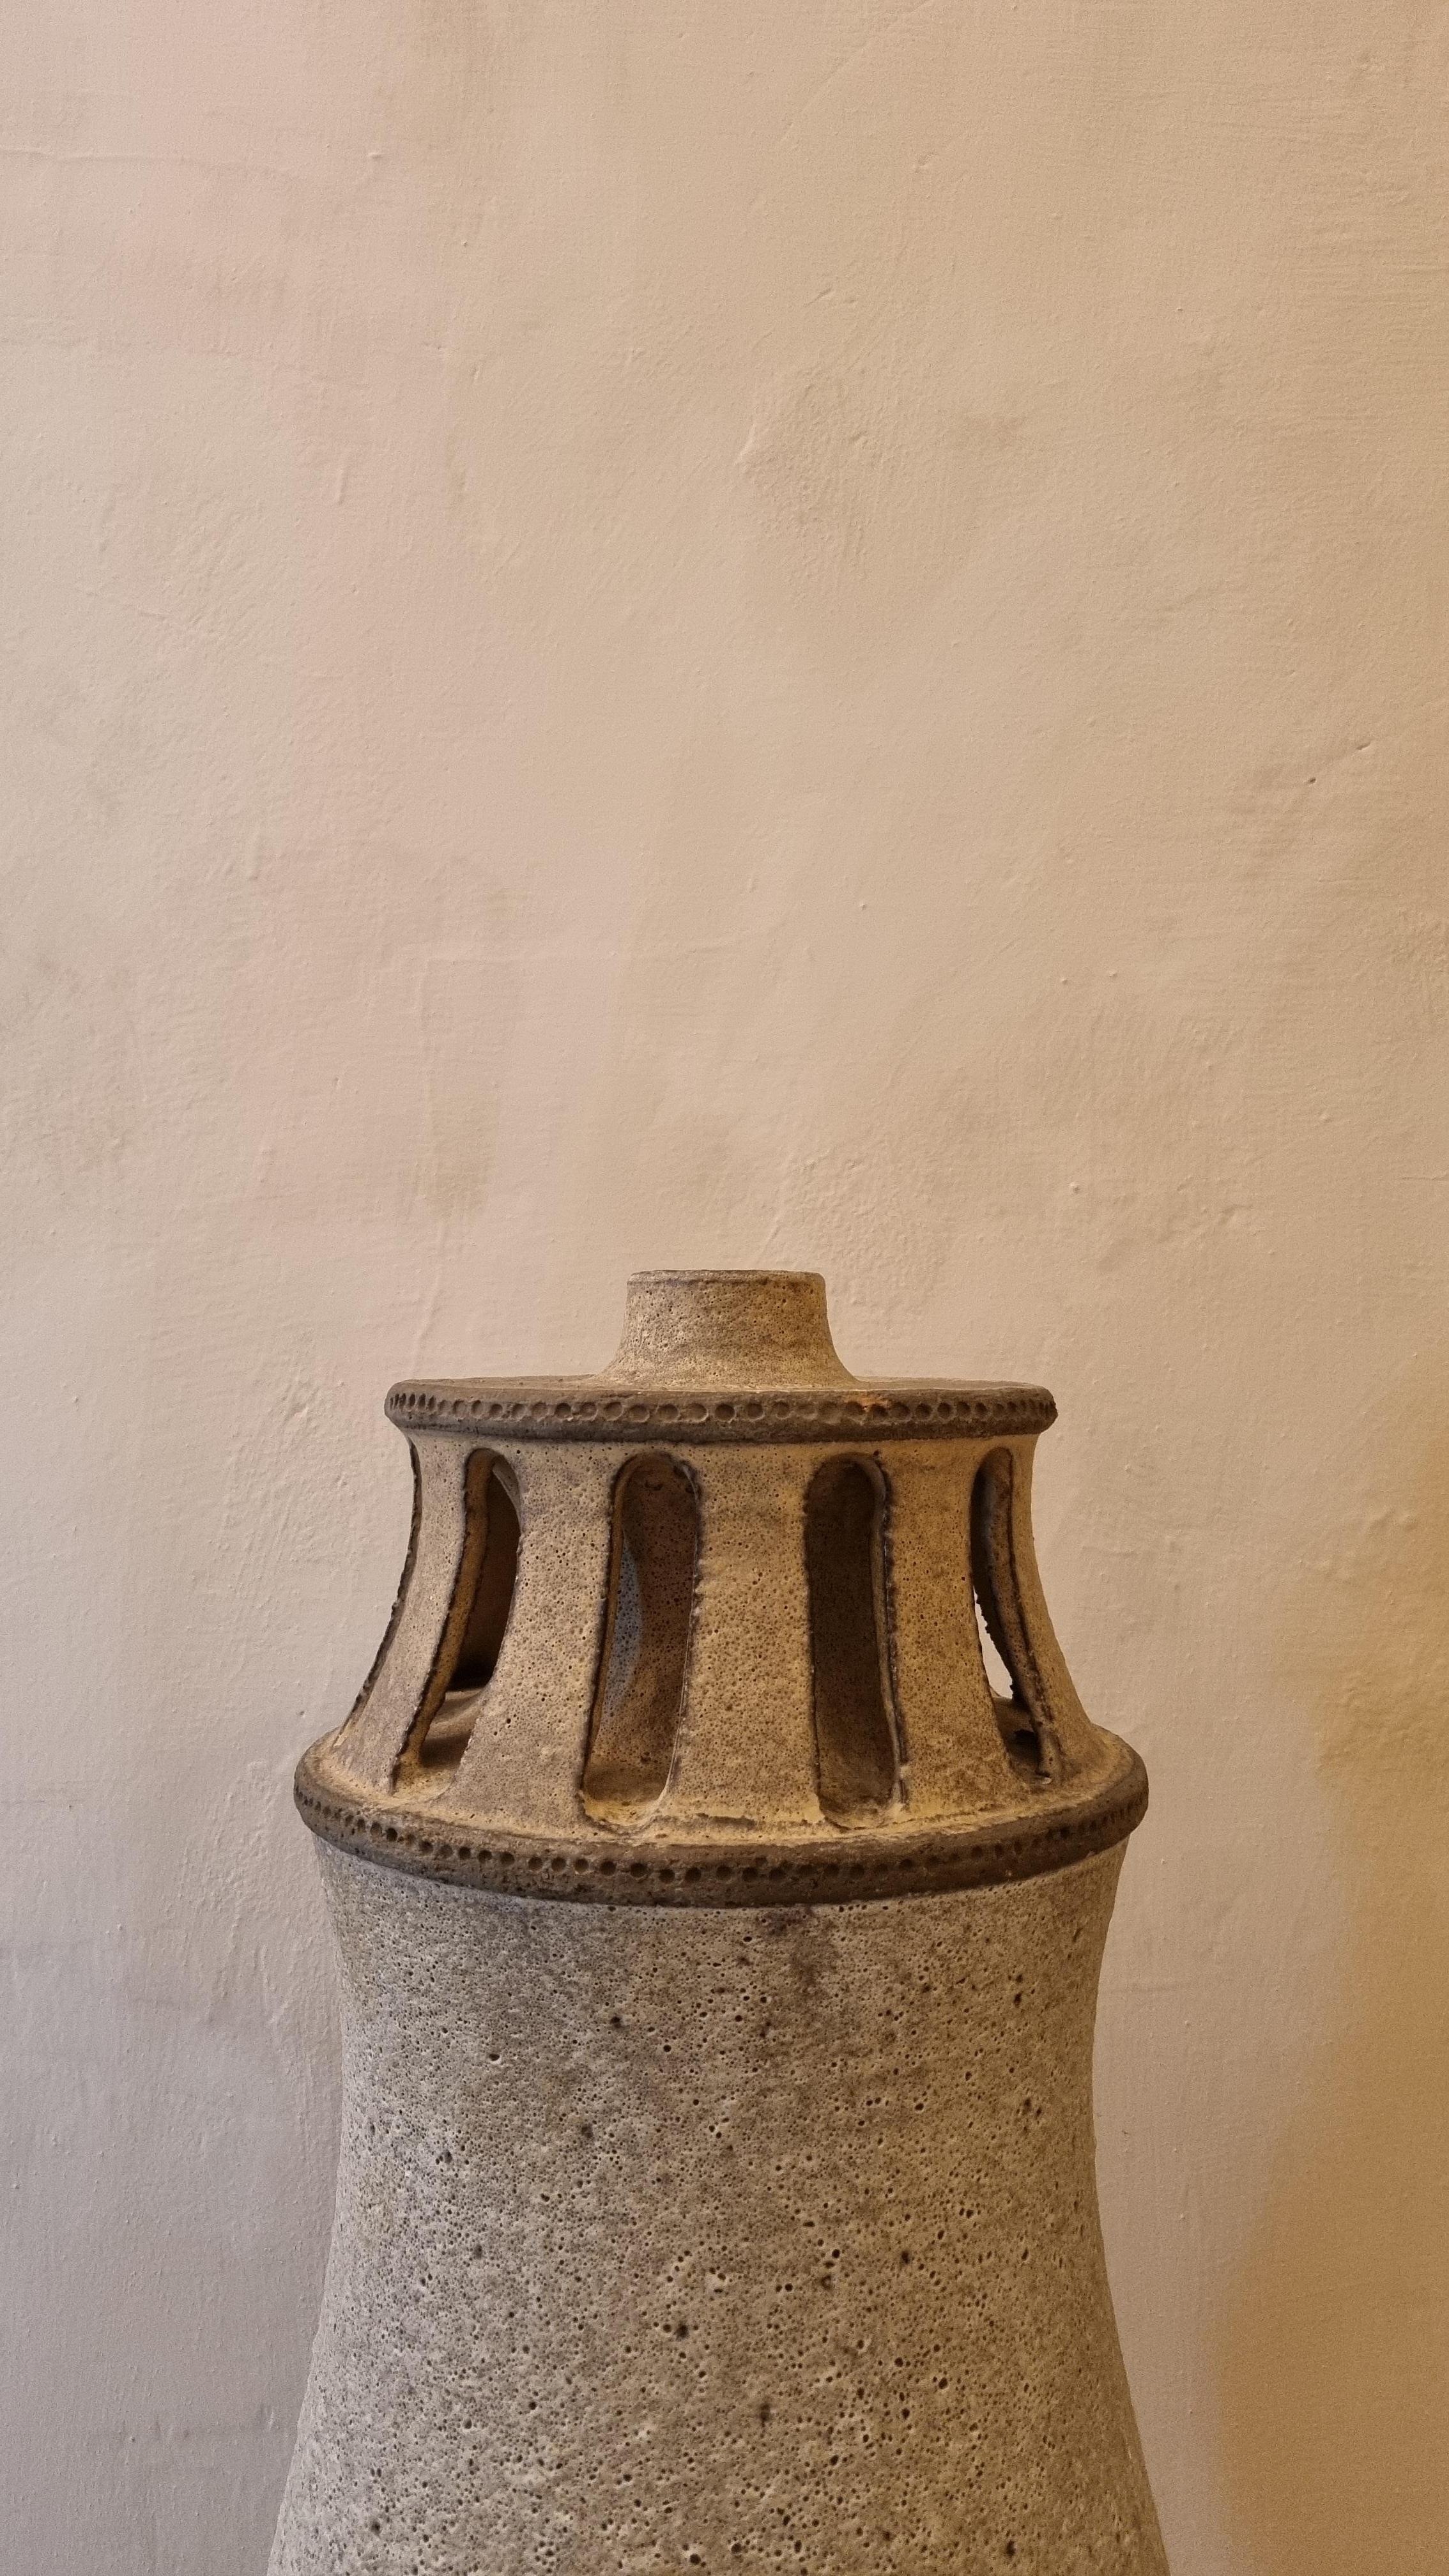 Porte-lampe en céramique d'Aldo Londi pour Ceramiche Bitossi Montelupo, 1970, céramique émaillée,  le véhicule est en acier inoxydable, en argile grise mate, signé.
Ce modèle rare  a été produite en série limitée de  pièces,
Chaque œuvre créée par